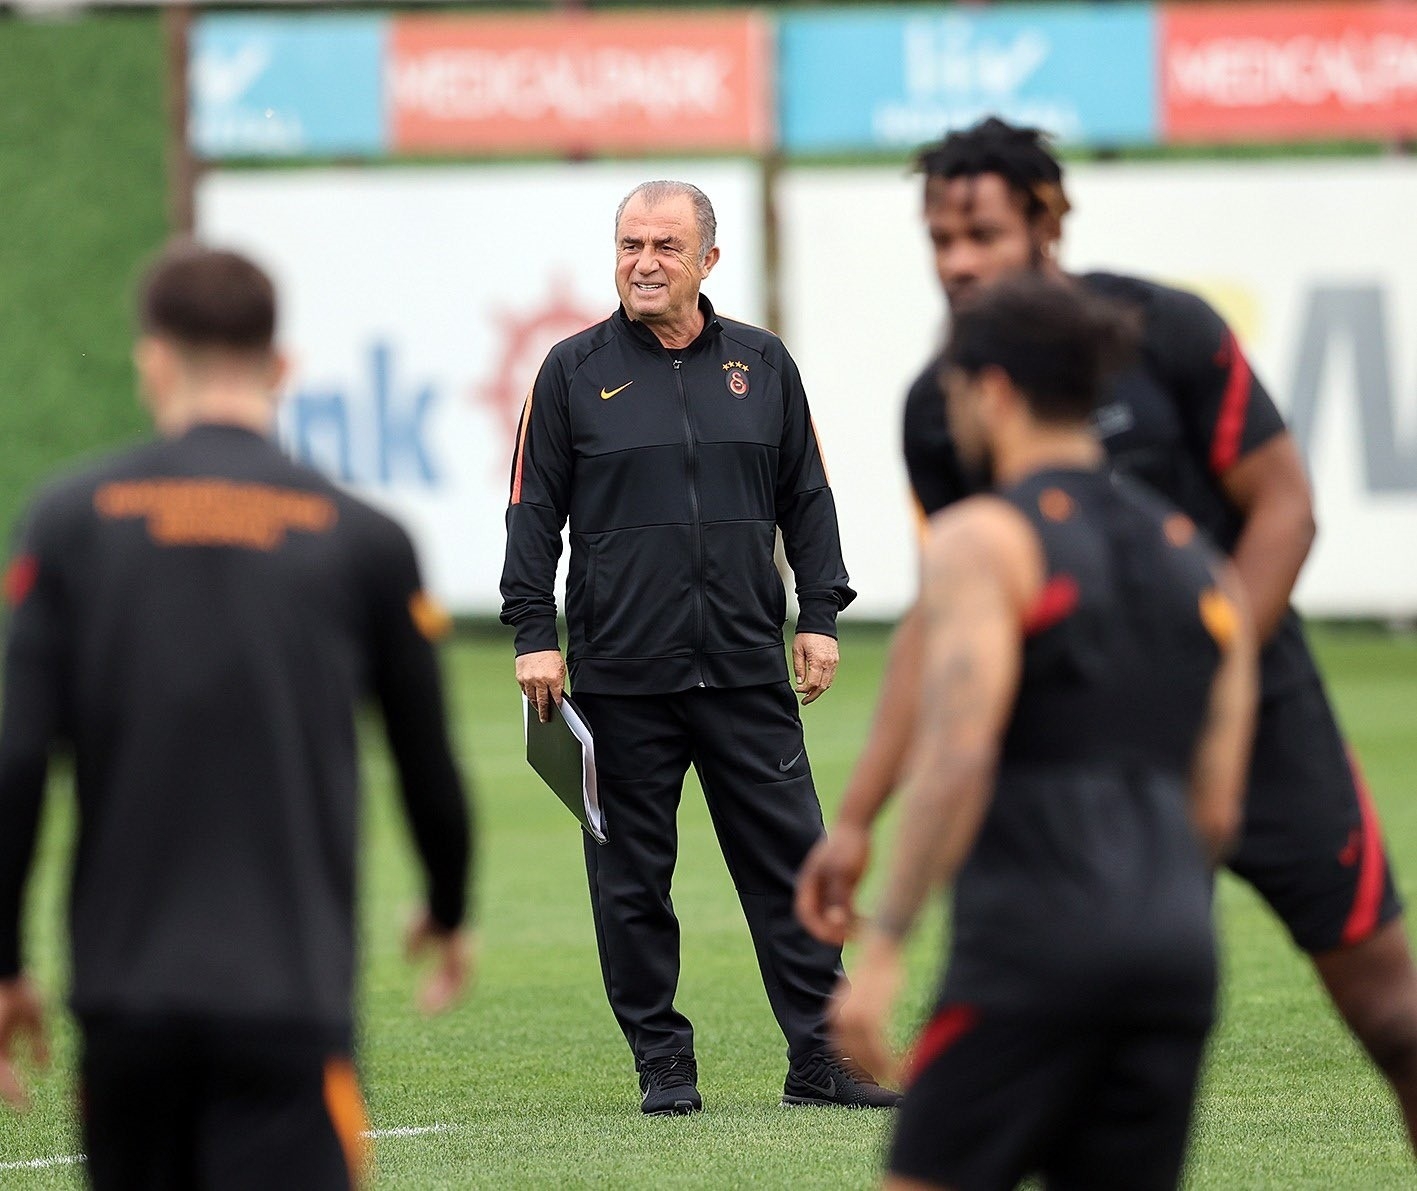 Galatasaray derbi hazırlıklarını tamamladı